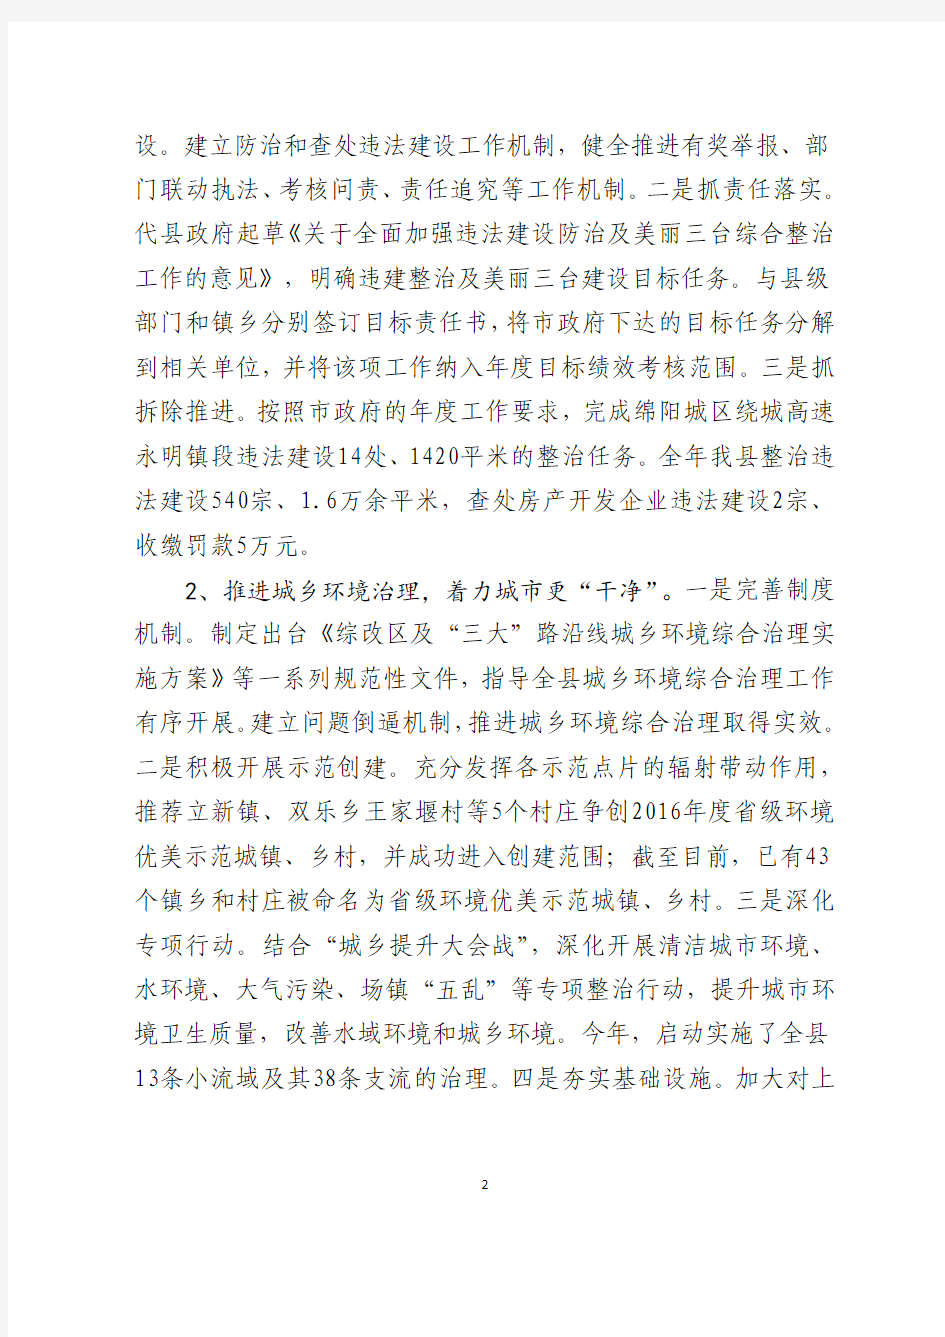 三台县城市管理行政执法局 2016 年部门决算编制说明